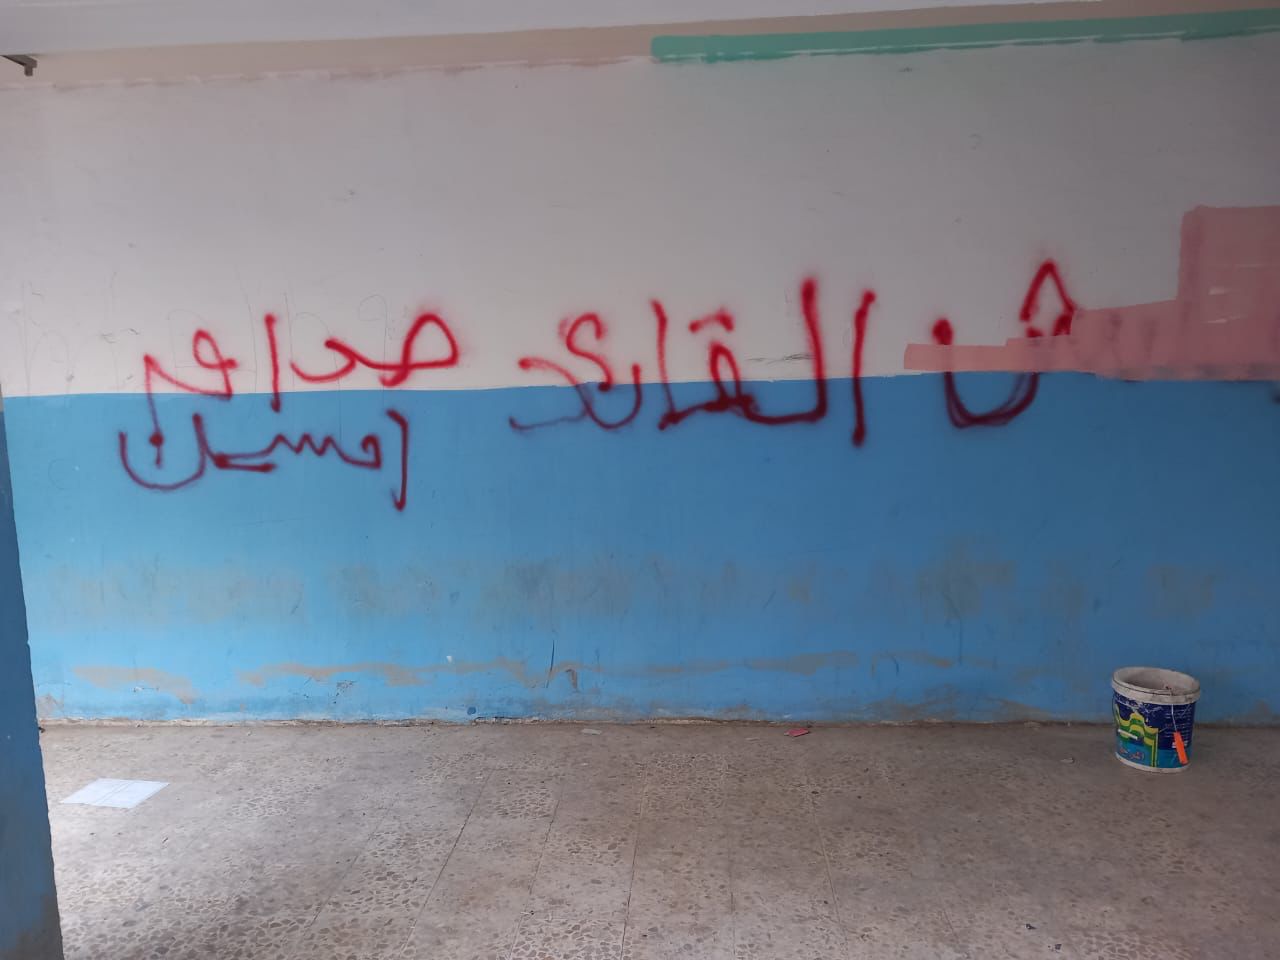 بالصور.. كتابات تمجّد صدام حسين و حزب البعث داخل مدرسة ببغداد